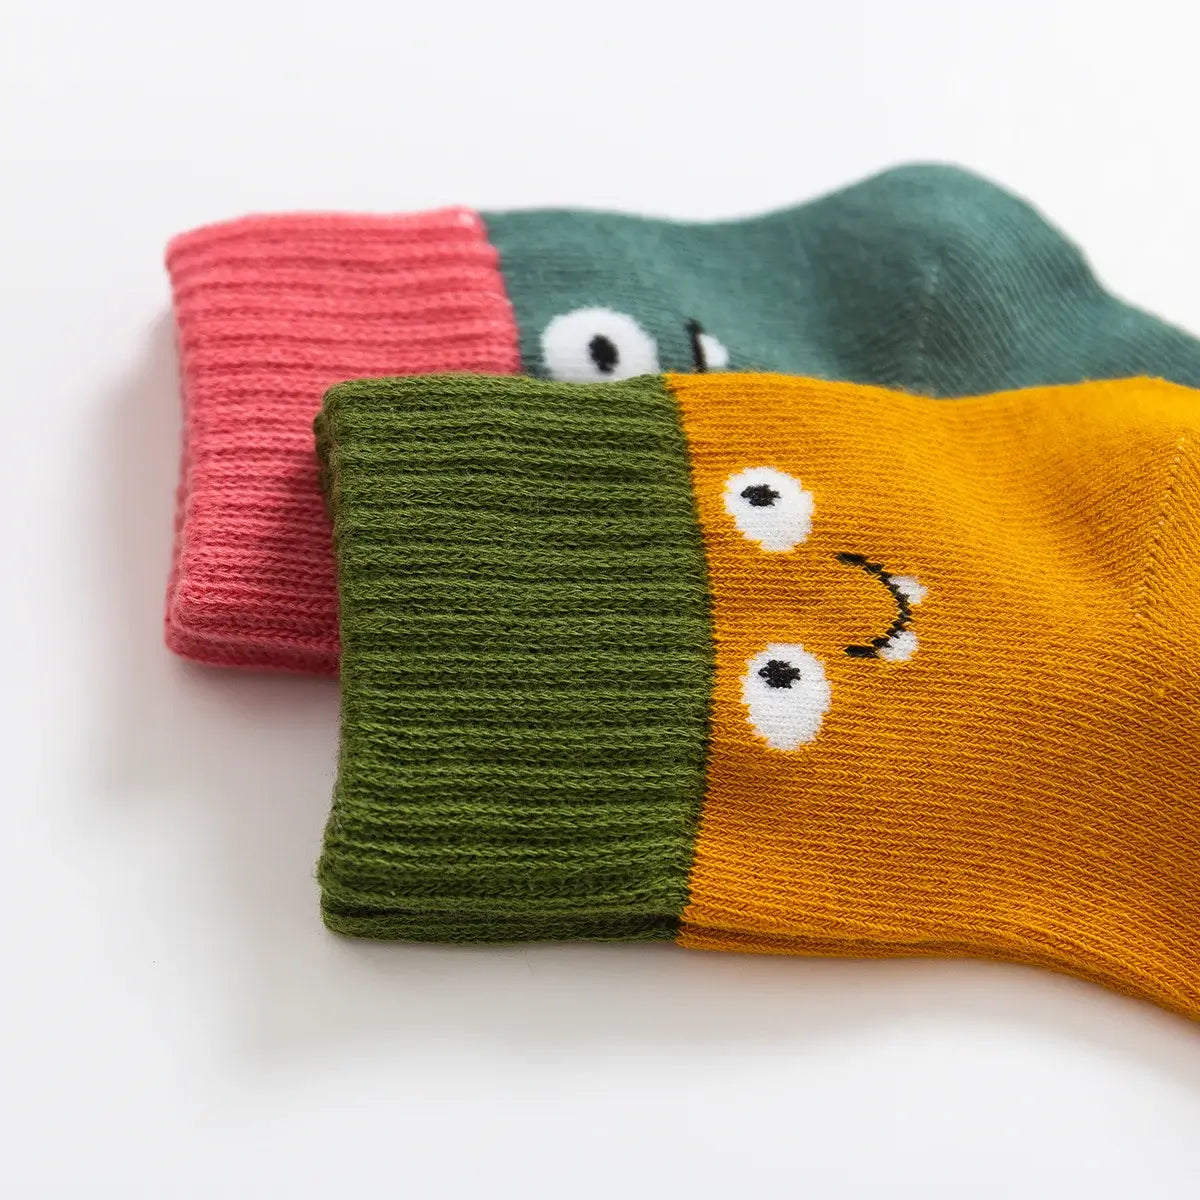 Chaussettes longues en coton à motif têtes drôles pour enfants | Chaussettes douces et confortables | Disponibles en différentes tailles et couleurs | Un cadeau parfait pour les enfants de tous âges